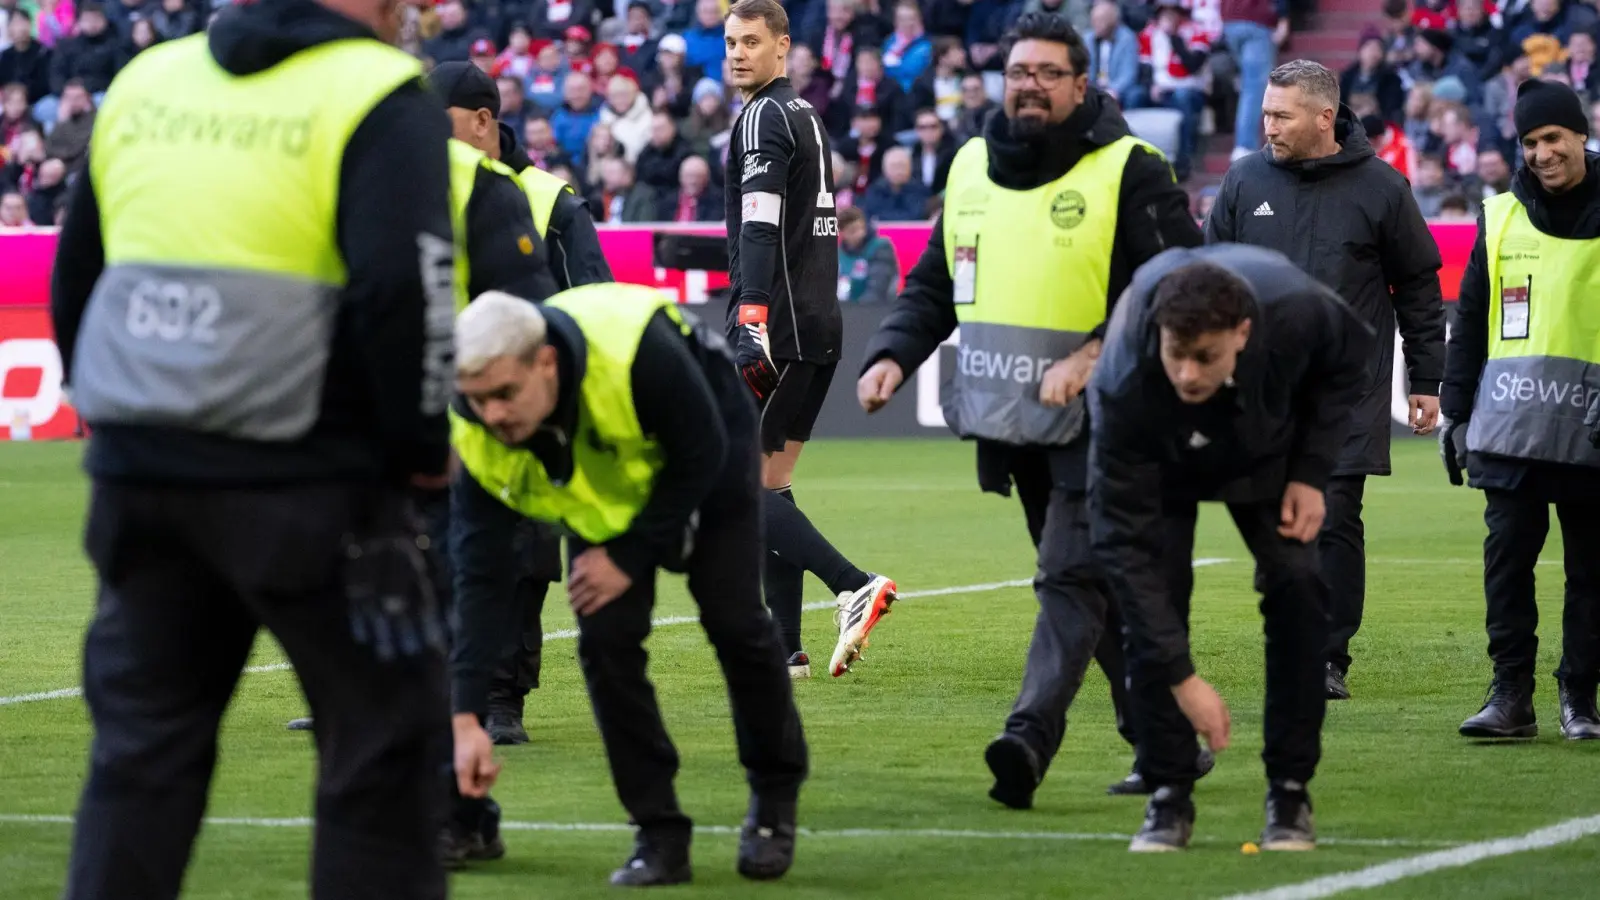 Der FC Bayern wurde wegen der Fanproteste zu einer Geldstrafe verurteilt. (Bild: Sven Hoppe/dpa)